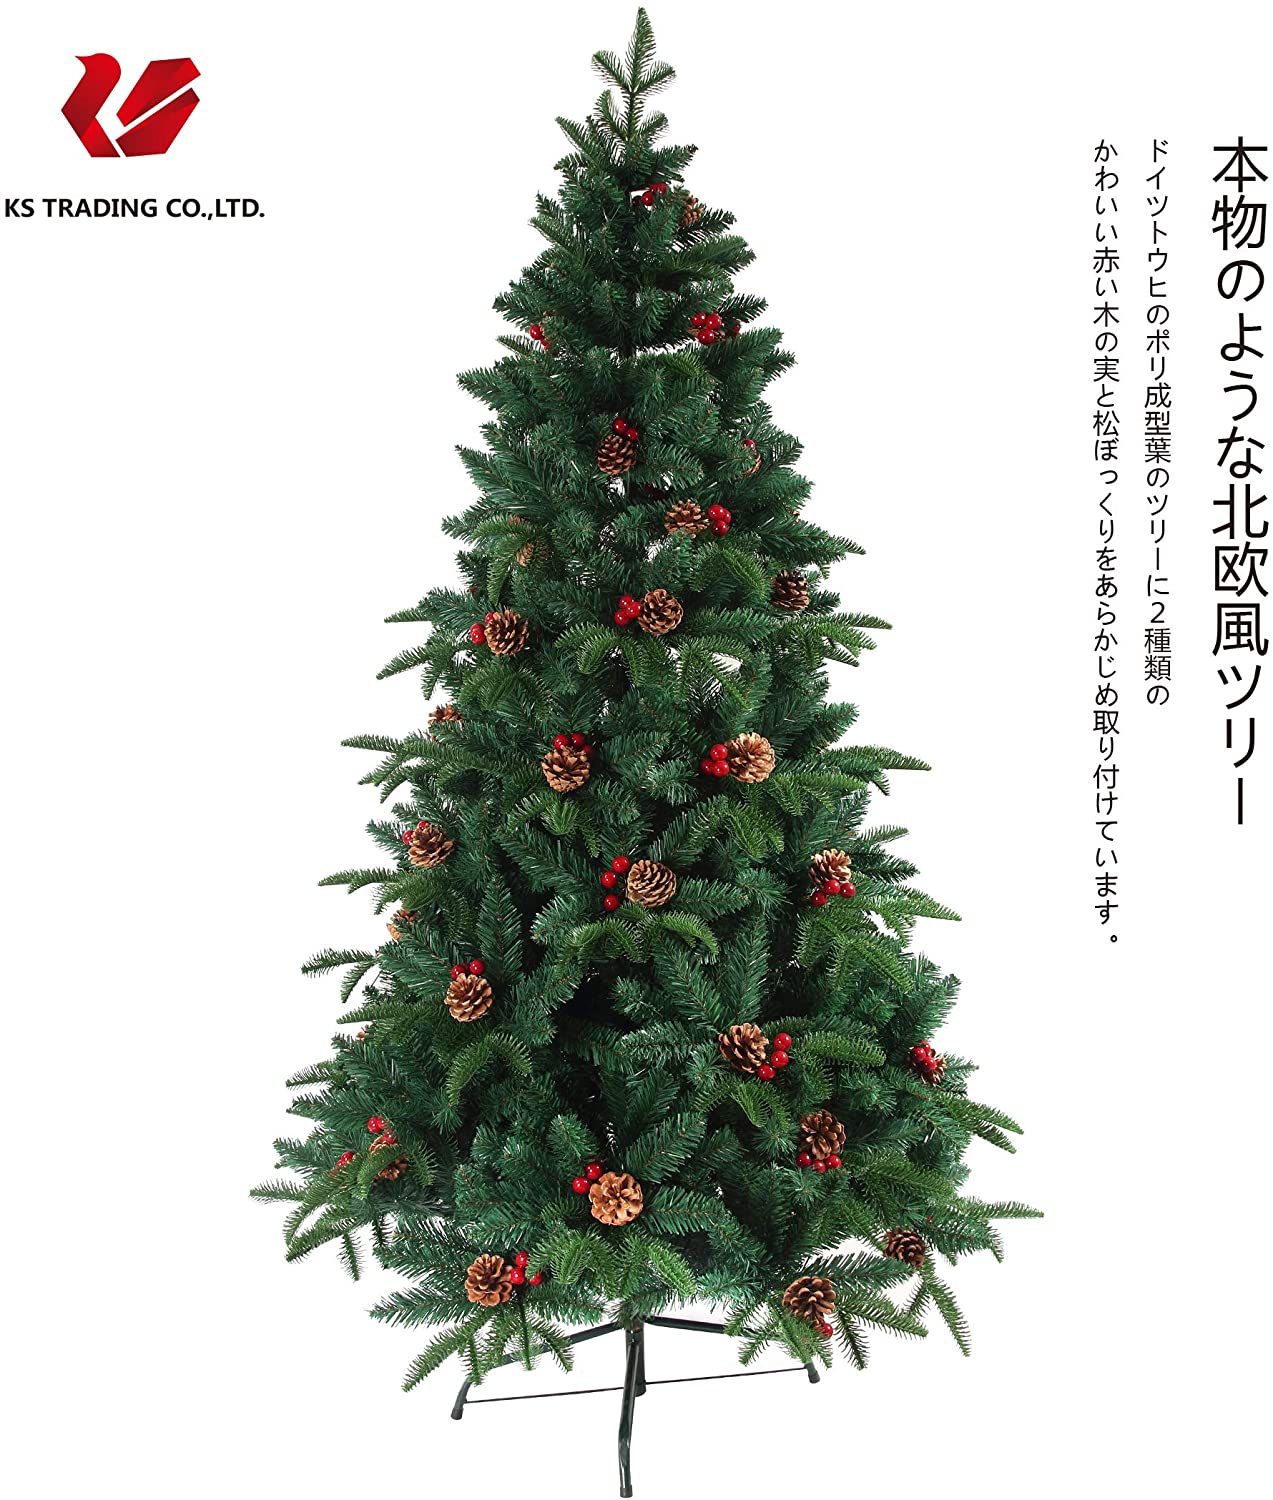 クリスマスツリー 松ぼっくり 送料無料 木の実付き 150cm - クリスマス